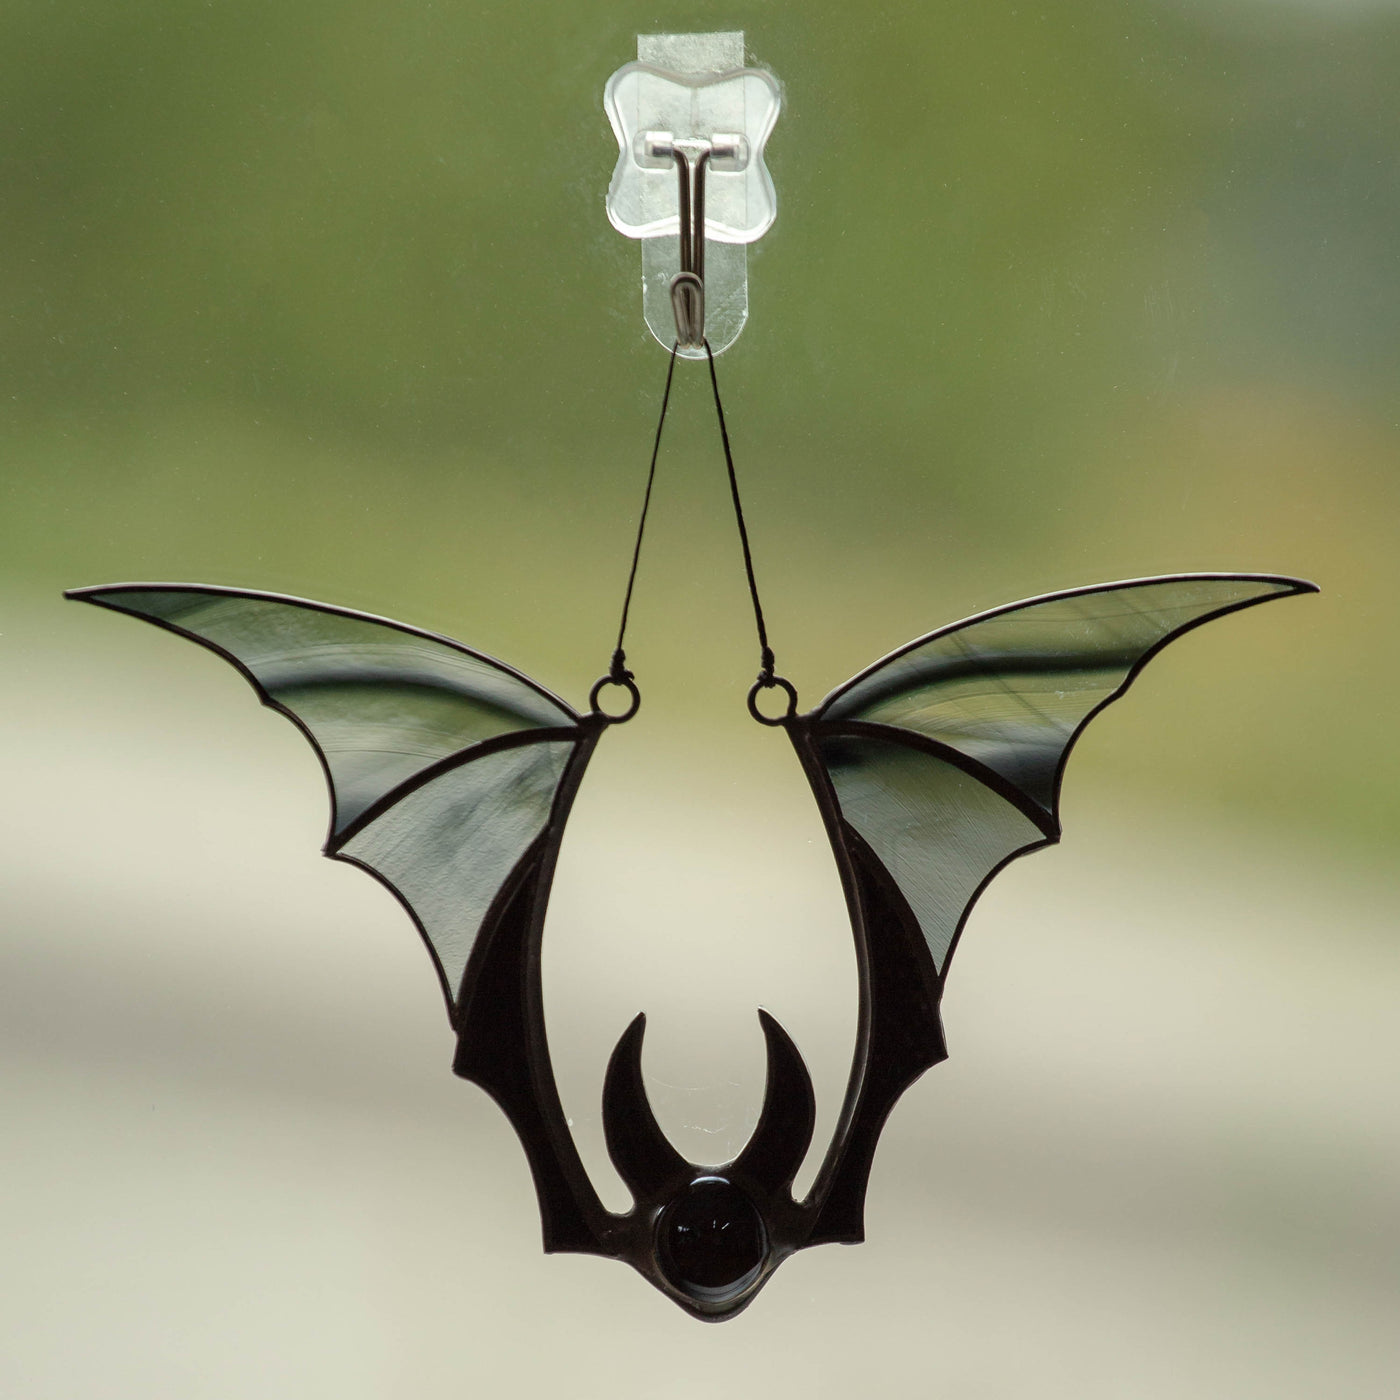 Halloween black bat window hanging suncatcher